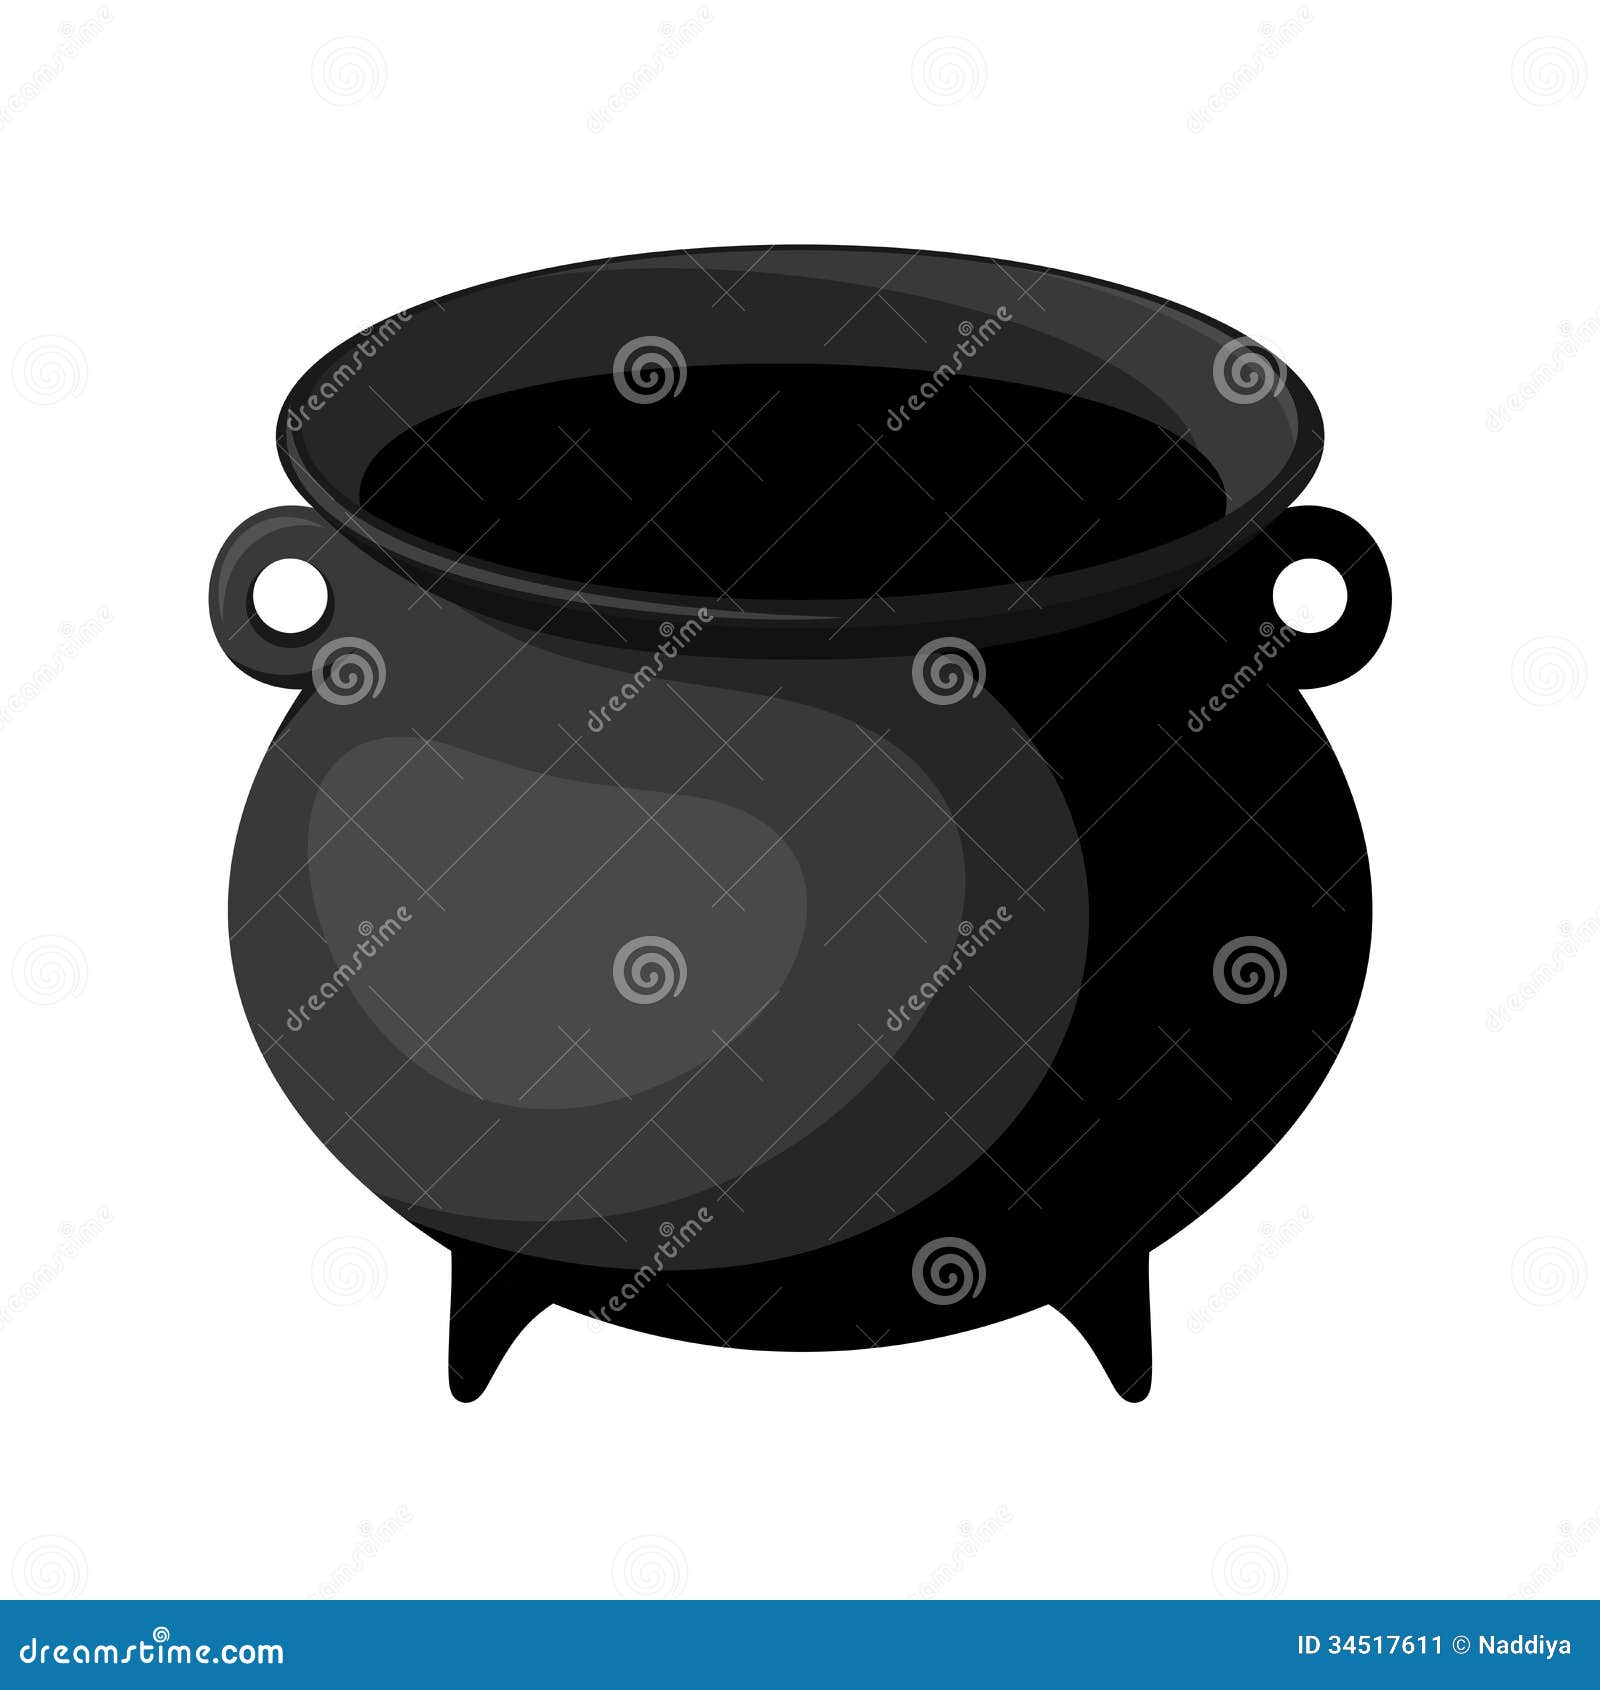 black witches cauldron.